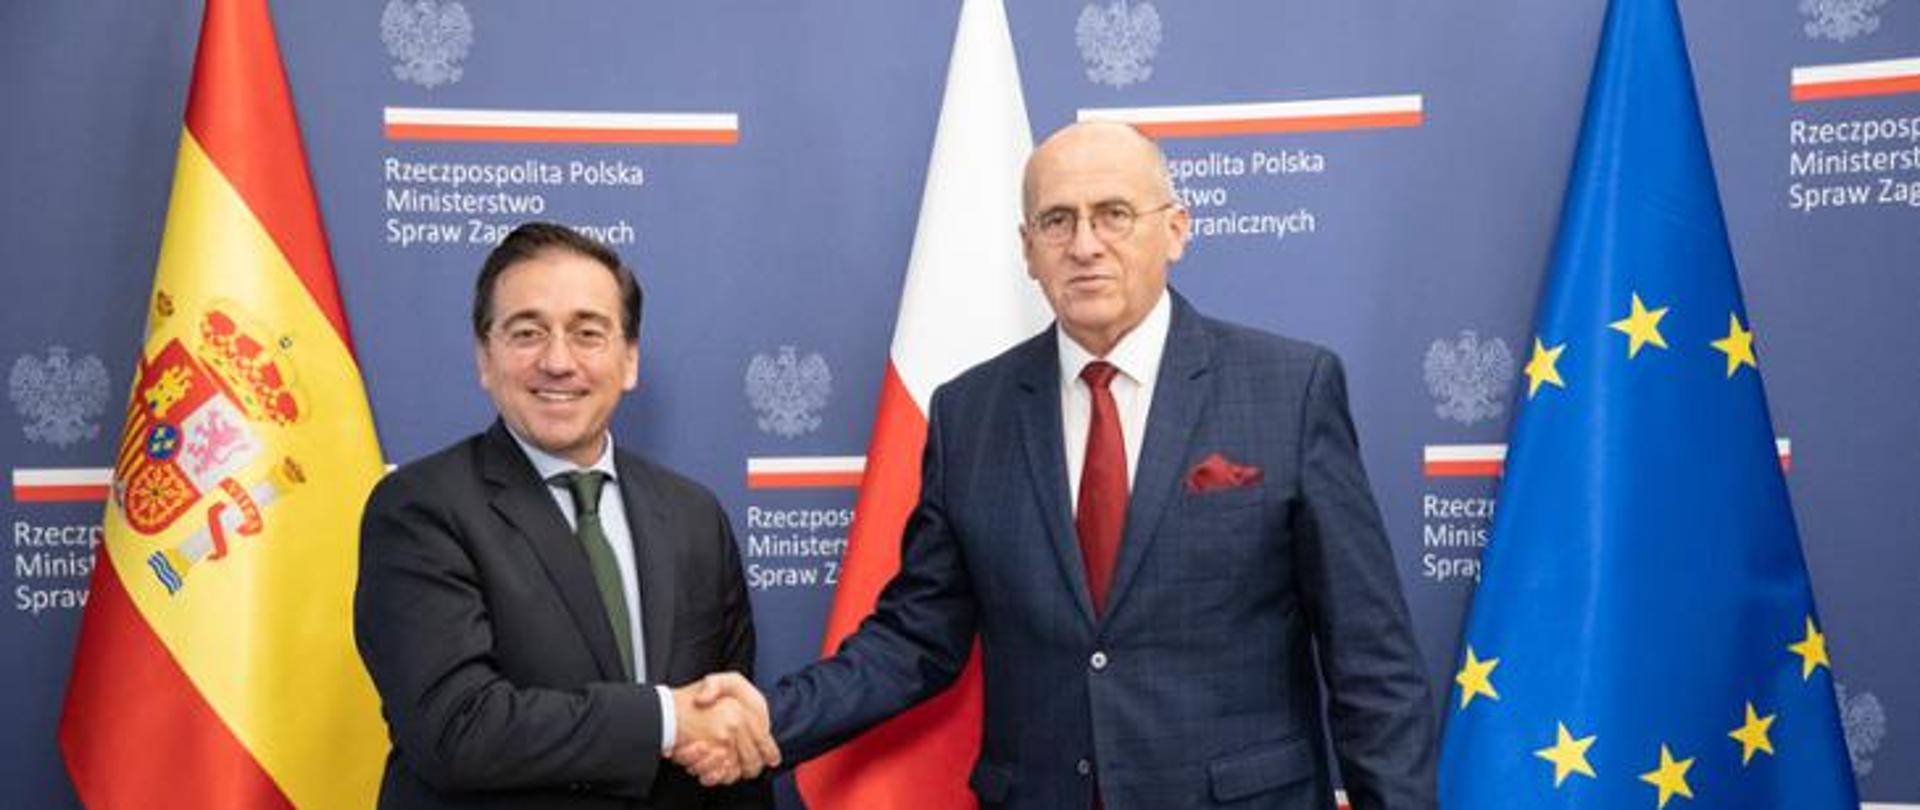 https://www.gov.pl/web/dyplomacja/polsko-hiszpanskie-konsultacje-miedzyrzadowe2